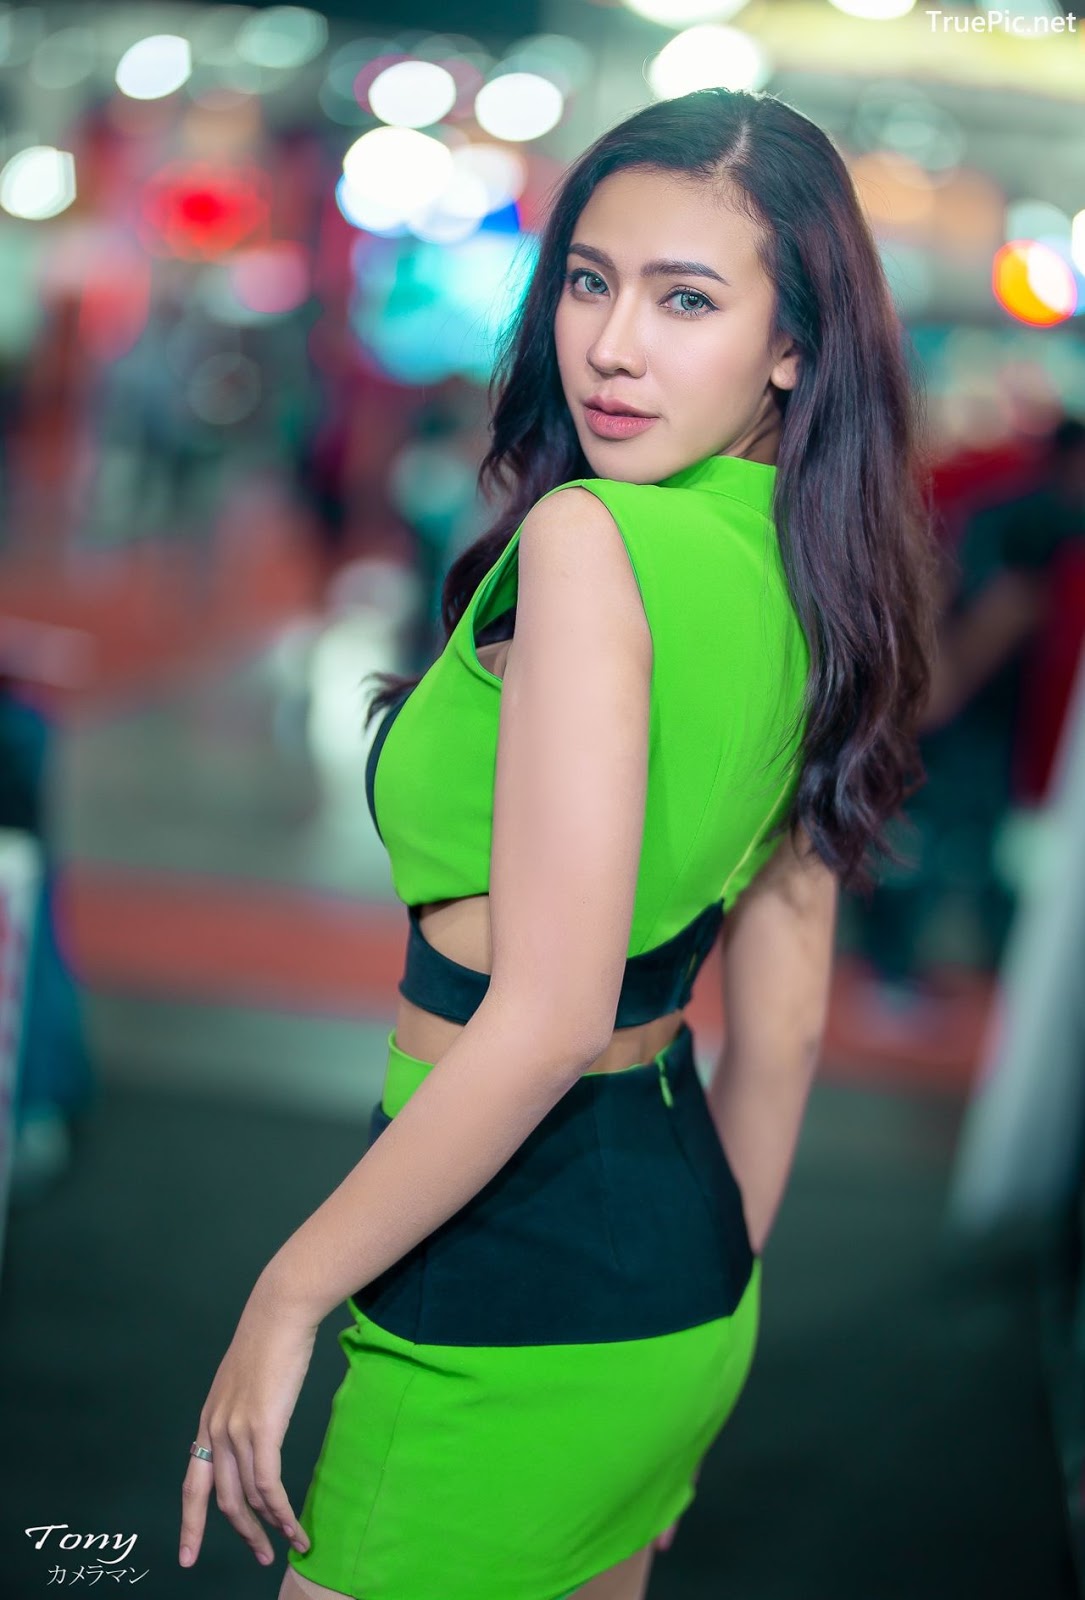 Girls thailand hottest in Thailand Nightlife